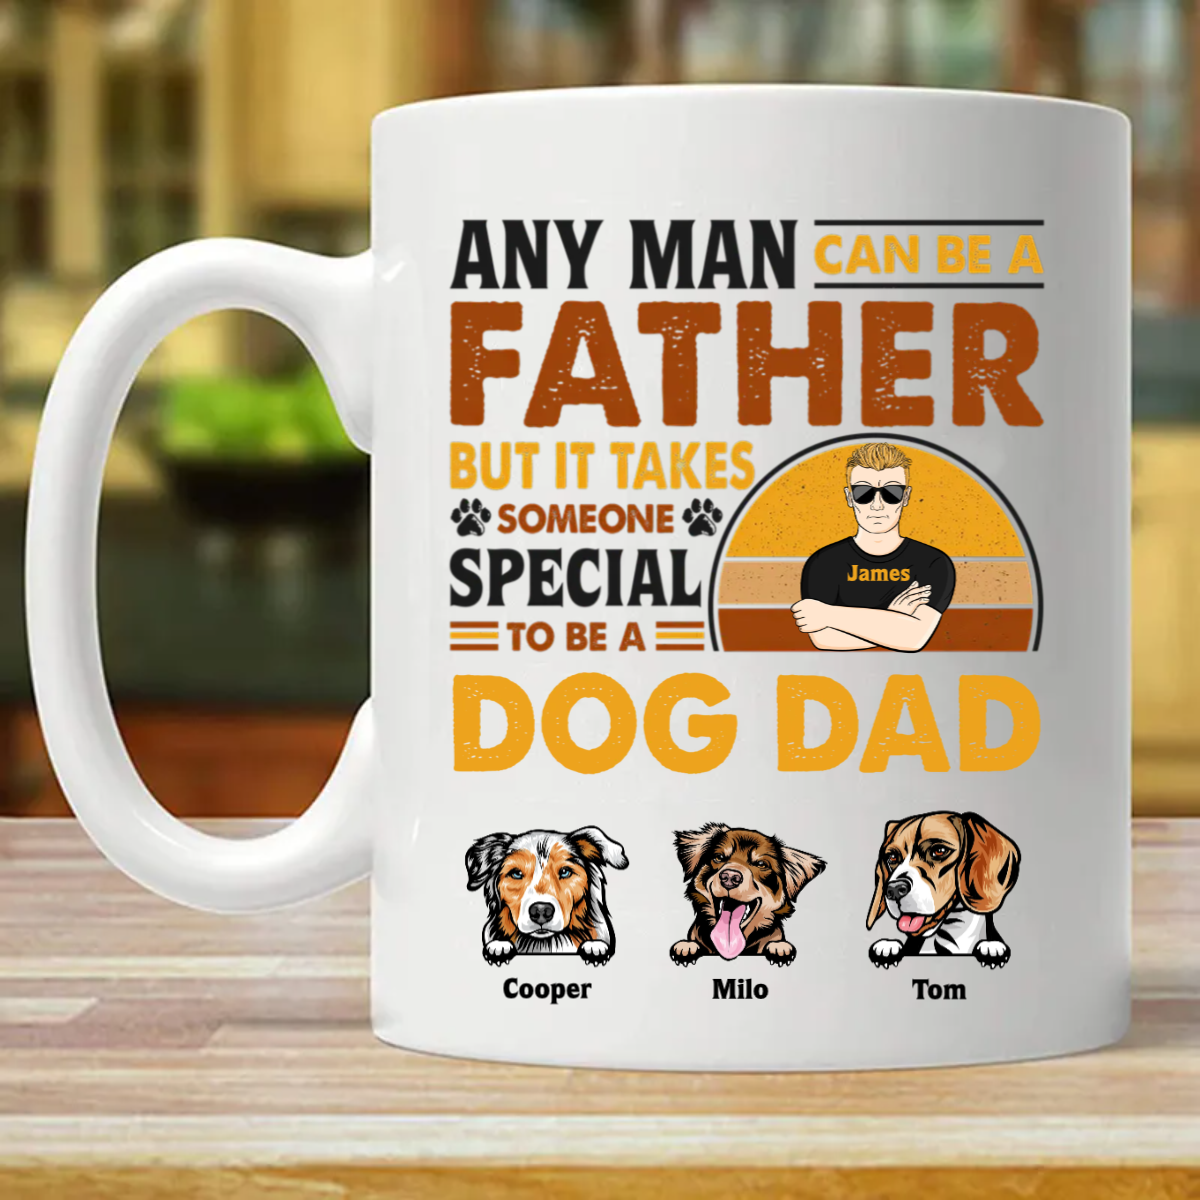 どんな男でも父親になれる - 犬のお父さん、猫のお父さんへのギフト - パーソナライズされたカスタムマグ (両面印刷)